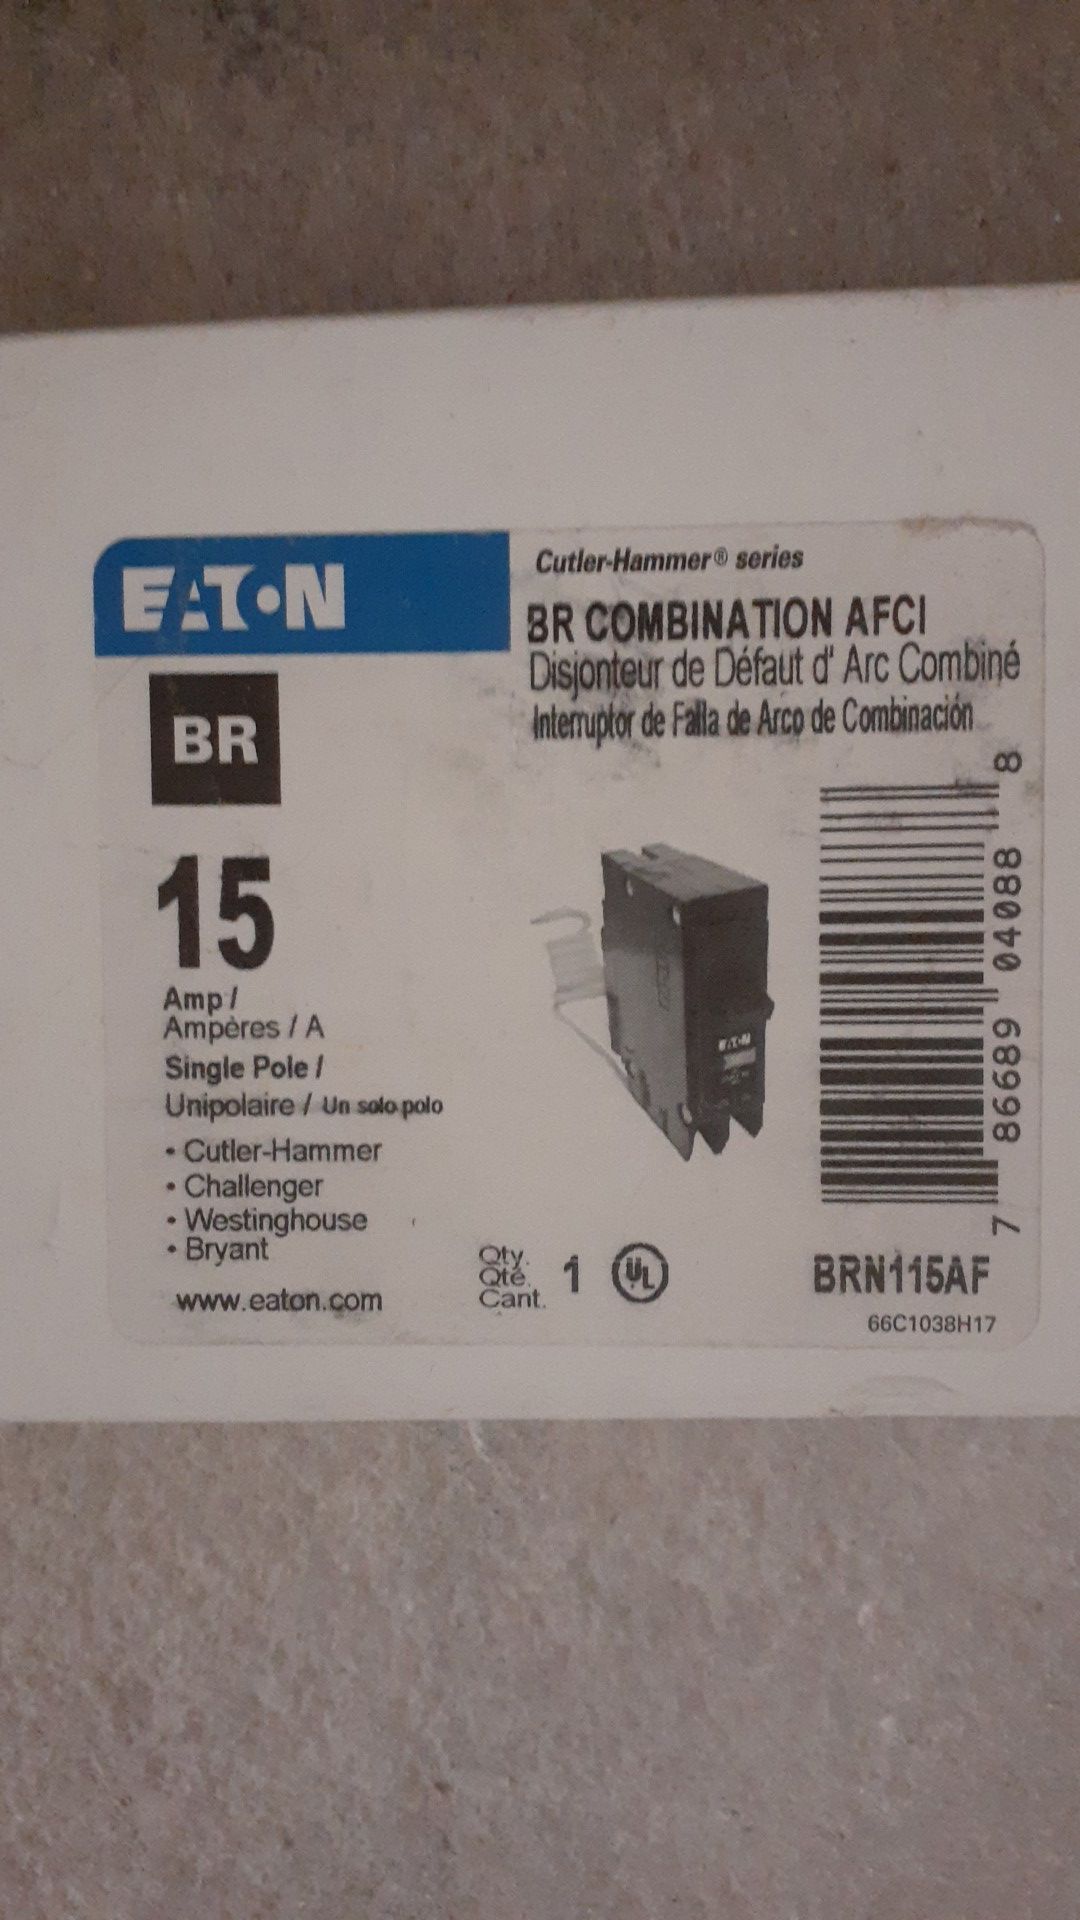 BR combination AFCI BREAKER'S